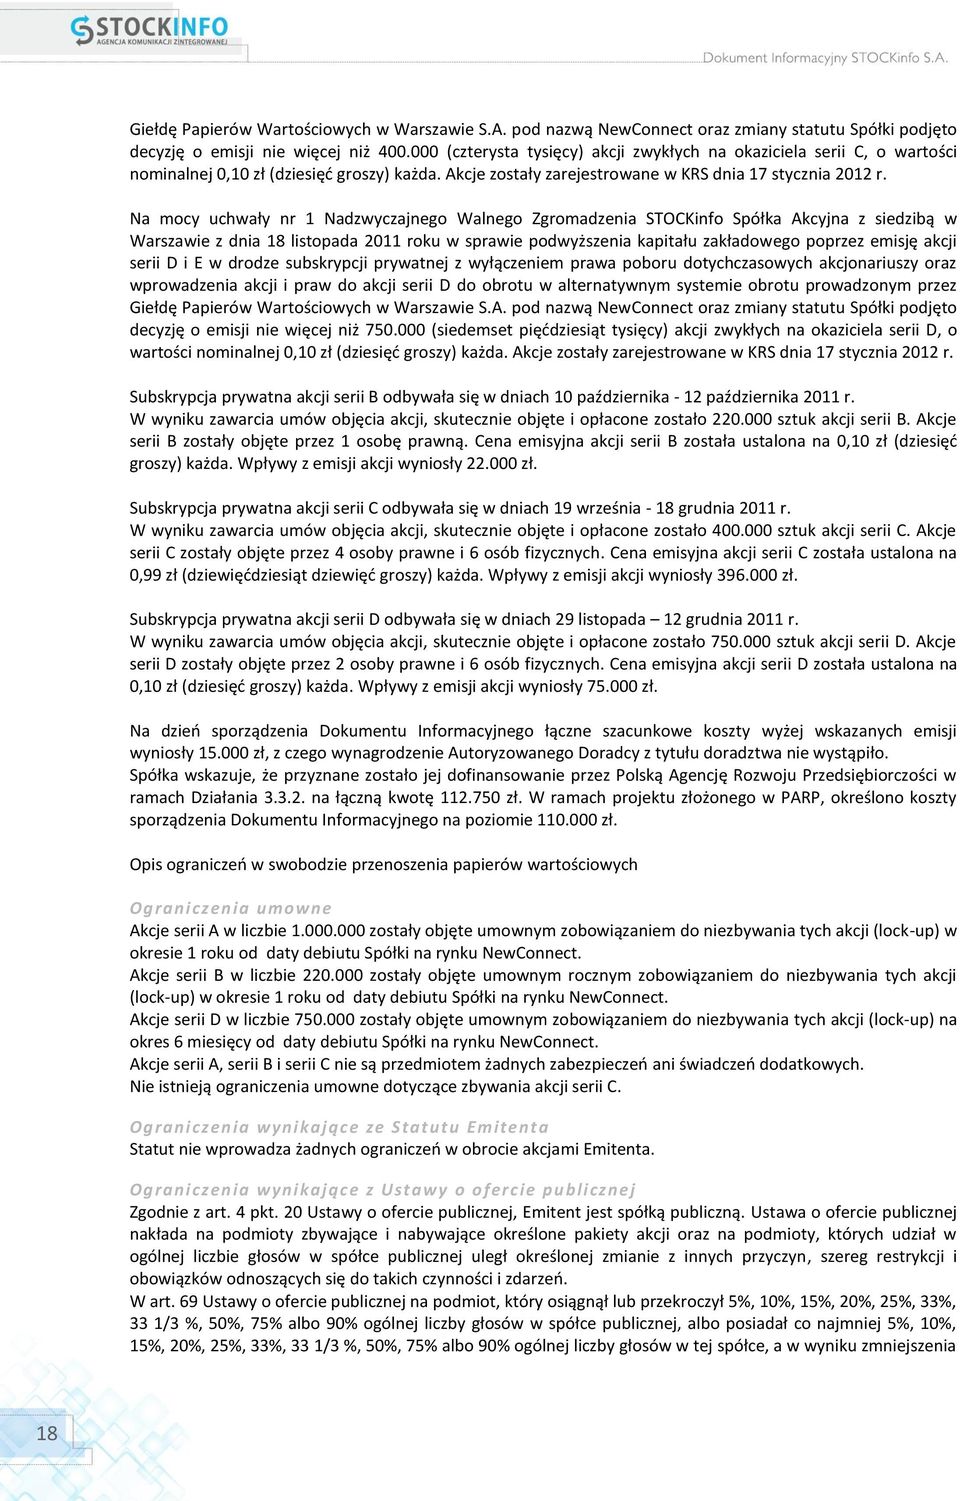 Na mocy uchwały nr 1 Nadzwyczajnego Walnego Zgromadzenia STOCKinfo Spółka Akcyjna z siedzibą w Warszawie z dnia 18 listopada 2011 roku w sprawie podwyższenia kapitału zakładowego poprzez emisję akcji